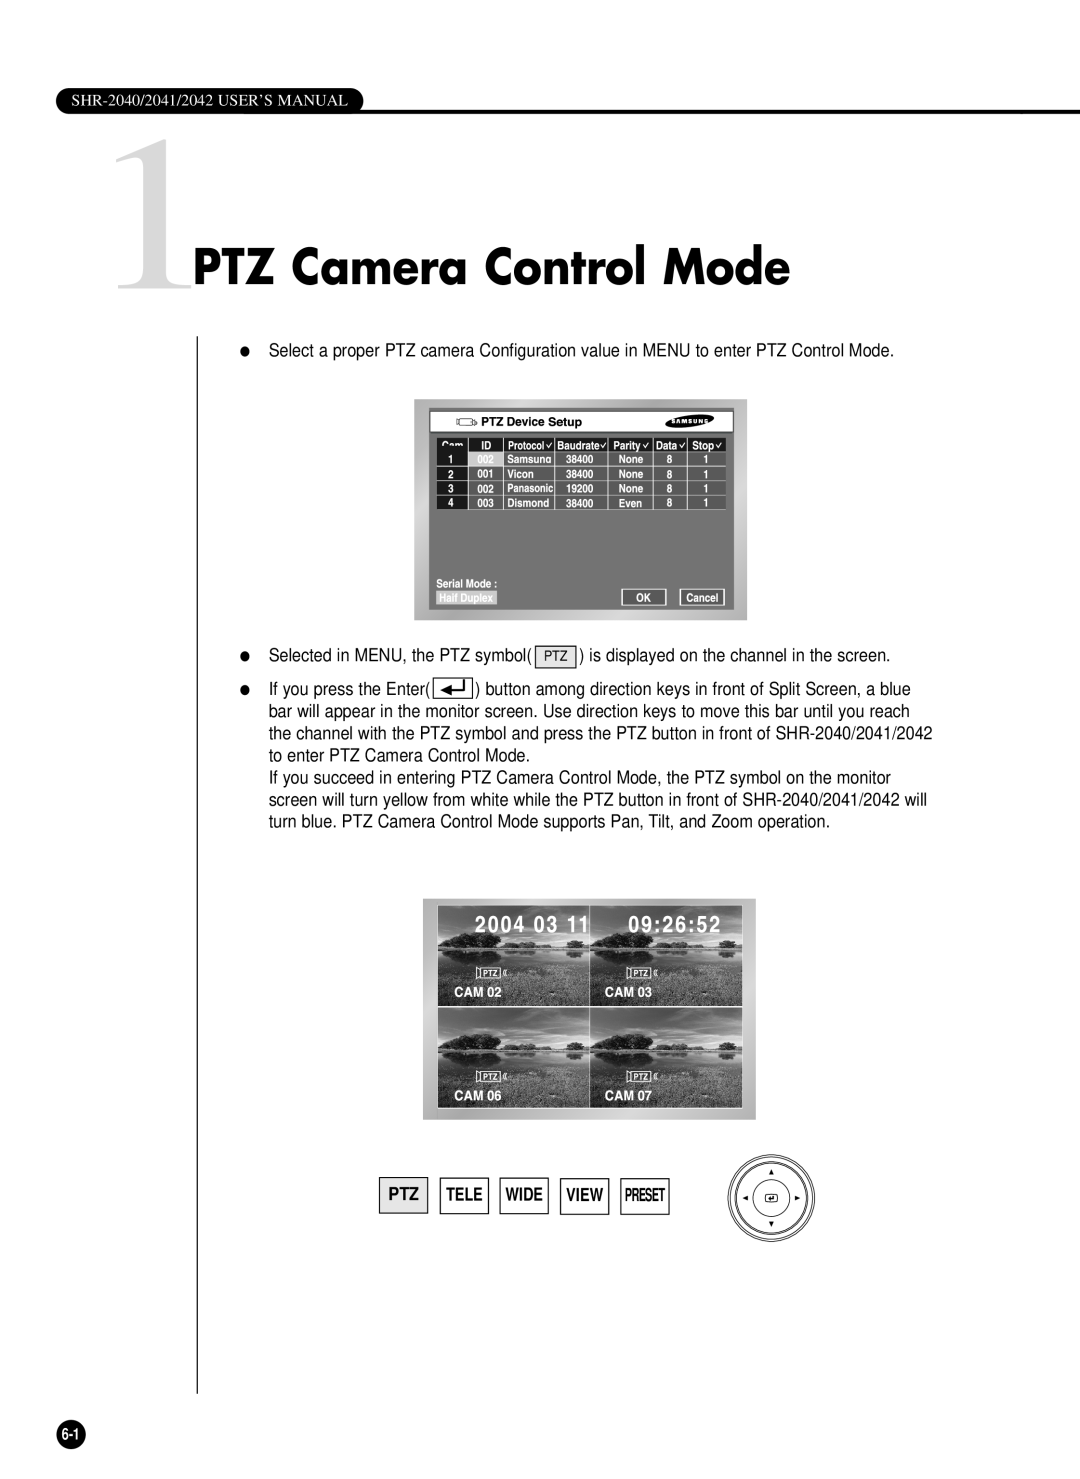 Samsung SHR-2040P/GAR, SHR-2042P, SHR-2040PX, SHR-2040P/XEC manual 1PTZ Camera Control Mode, Tele Wide View Preset 